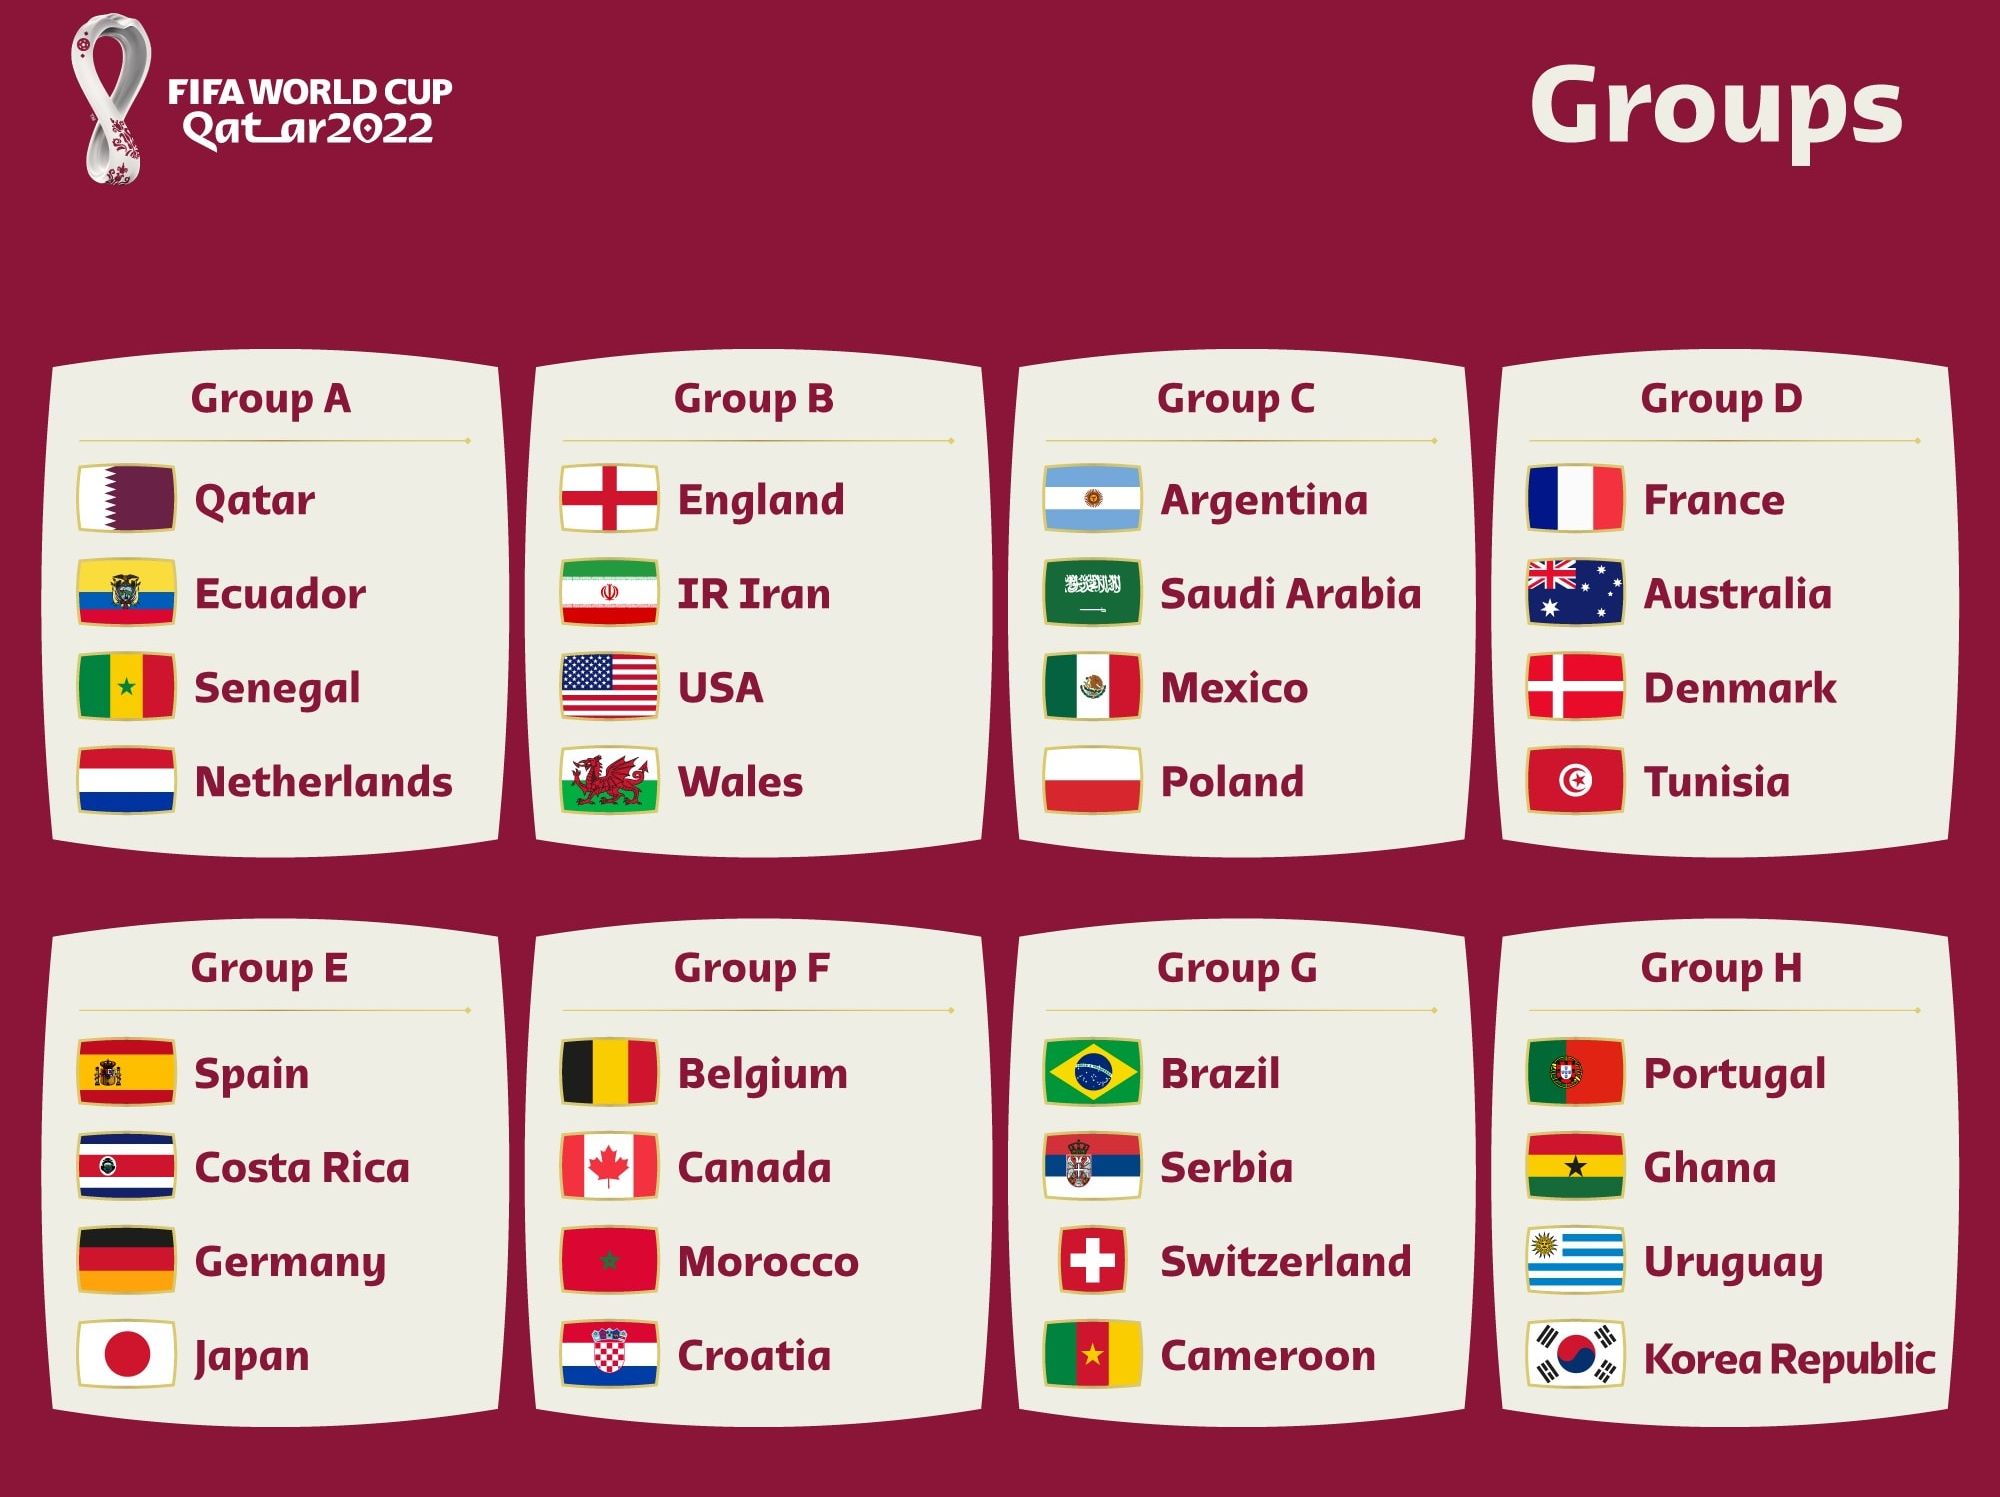 Jadwal dan Lokasi Pertandingan Piala Dunia Qatar 2022